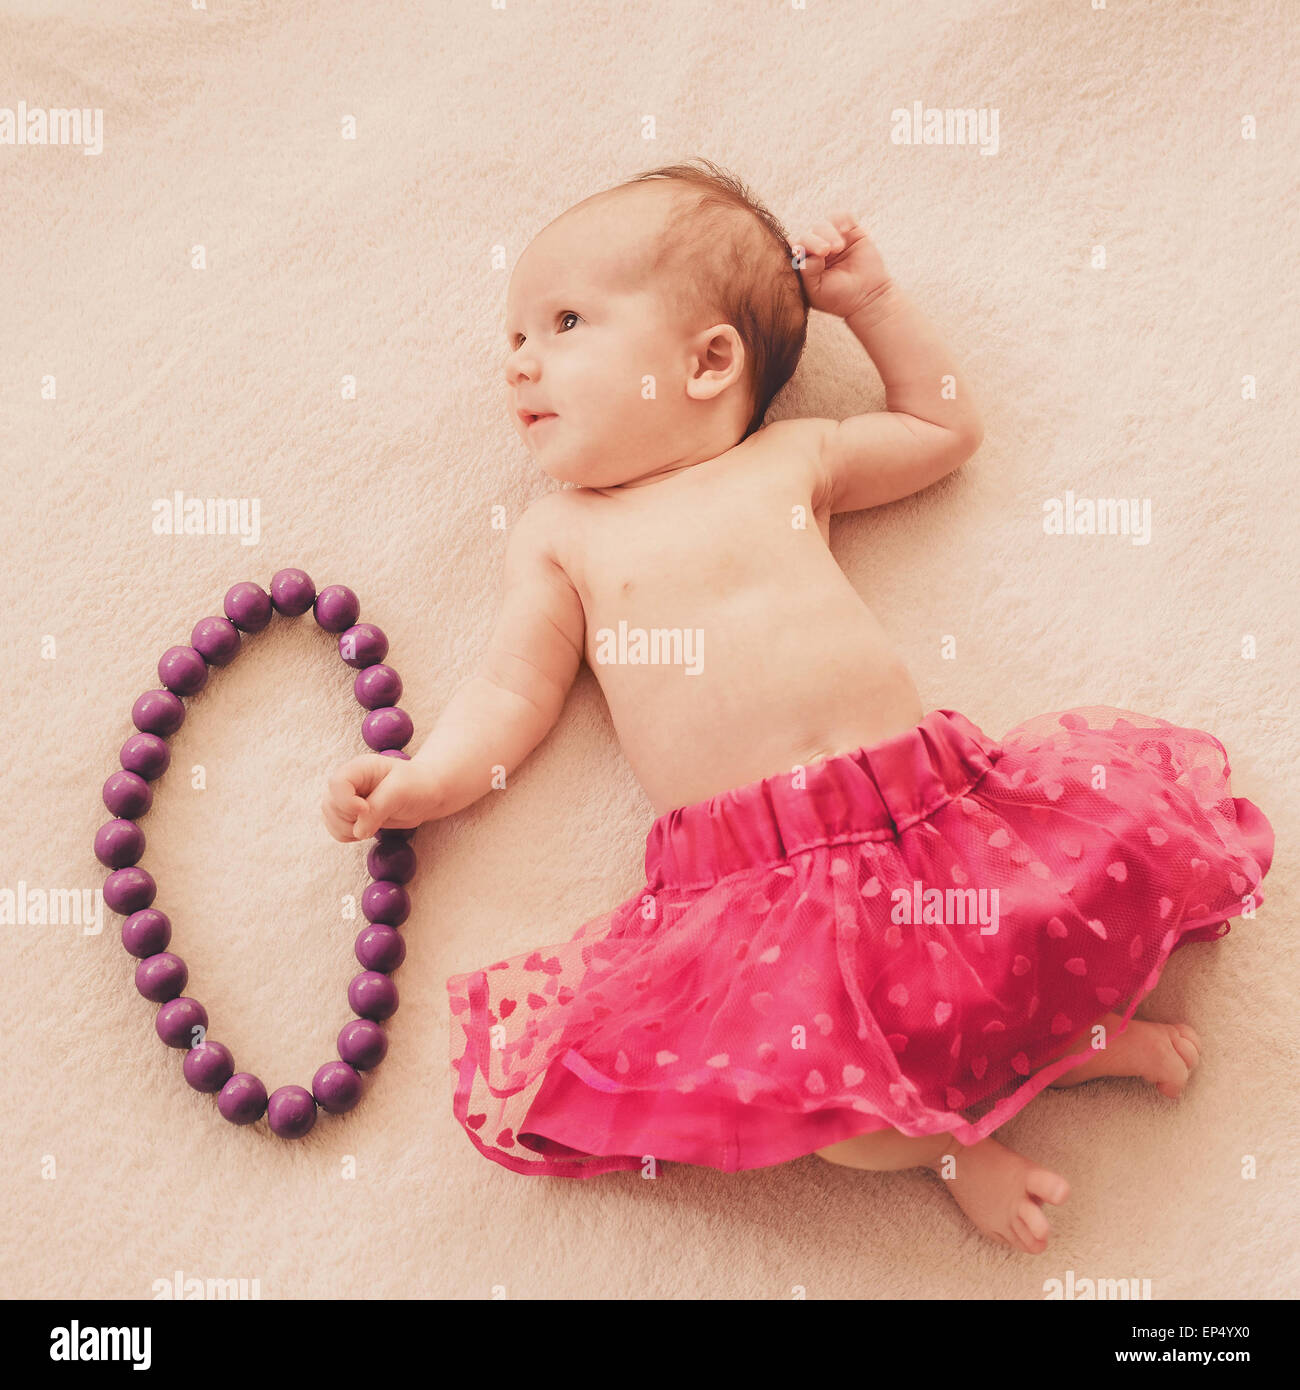 newborn baby girl in skirt Stock Photo